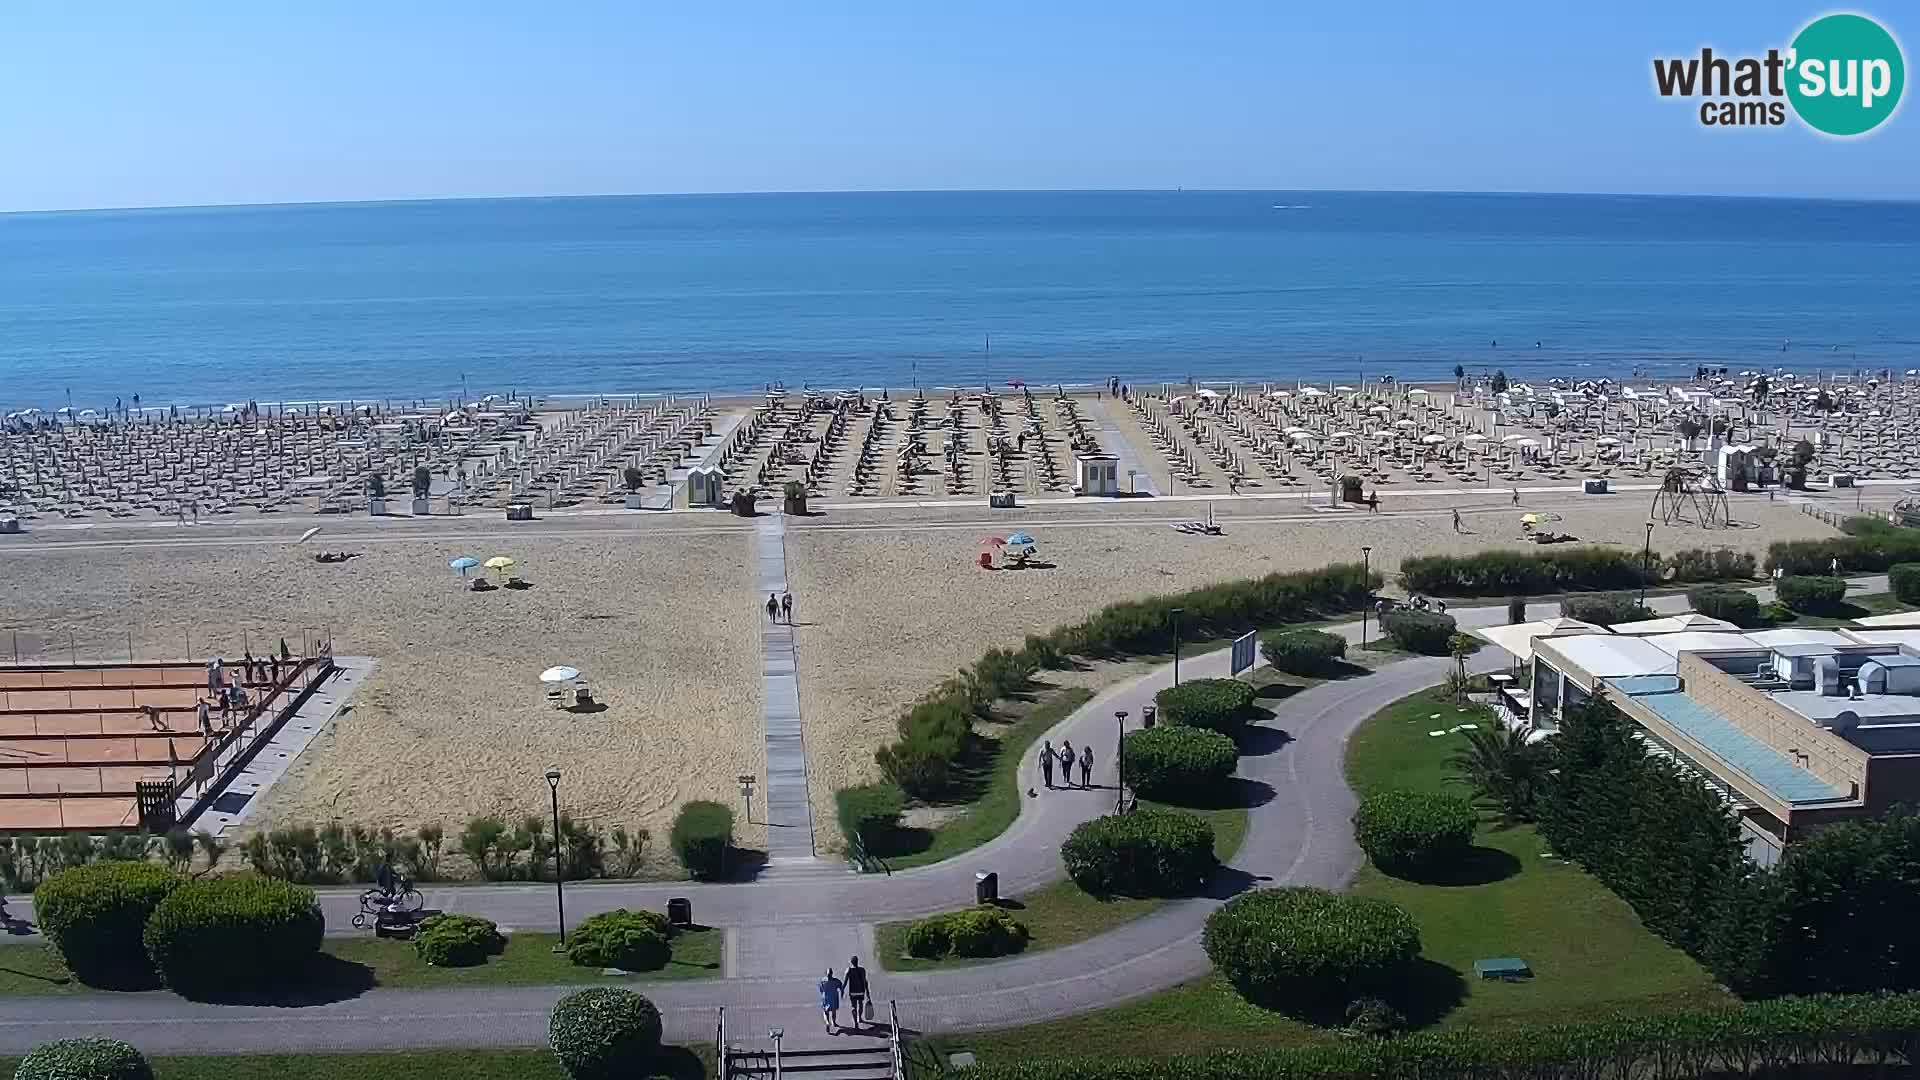 La spiaggia di Bibione webcam live e piazzale Zenit